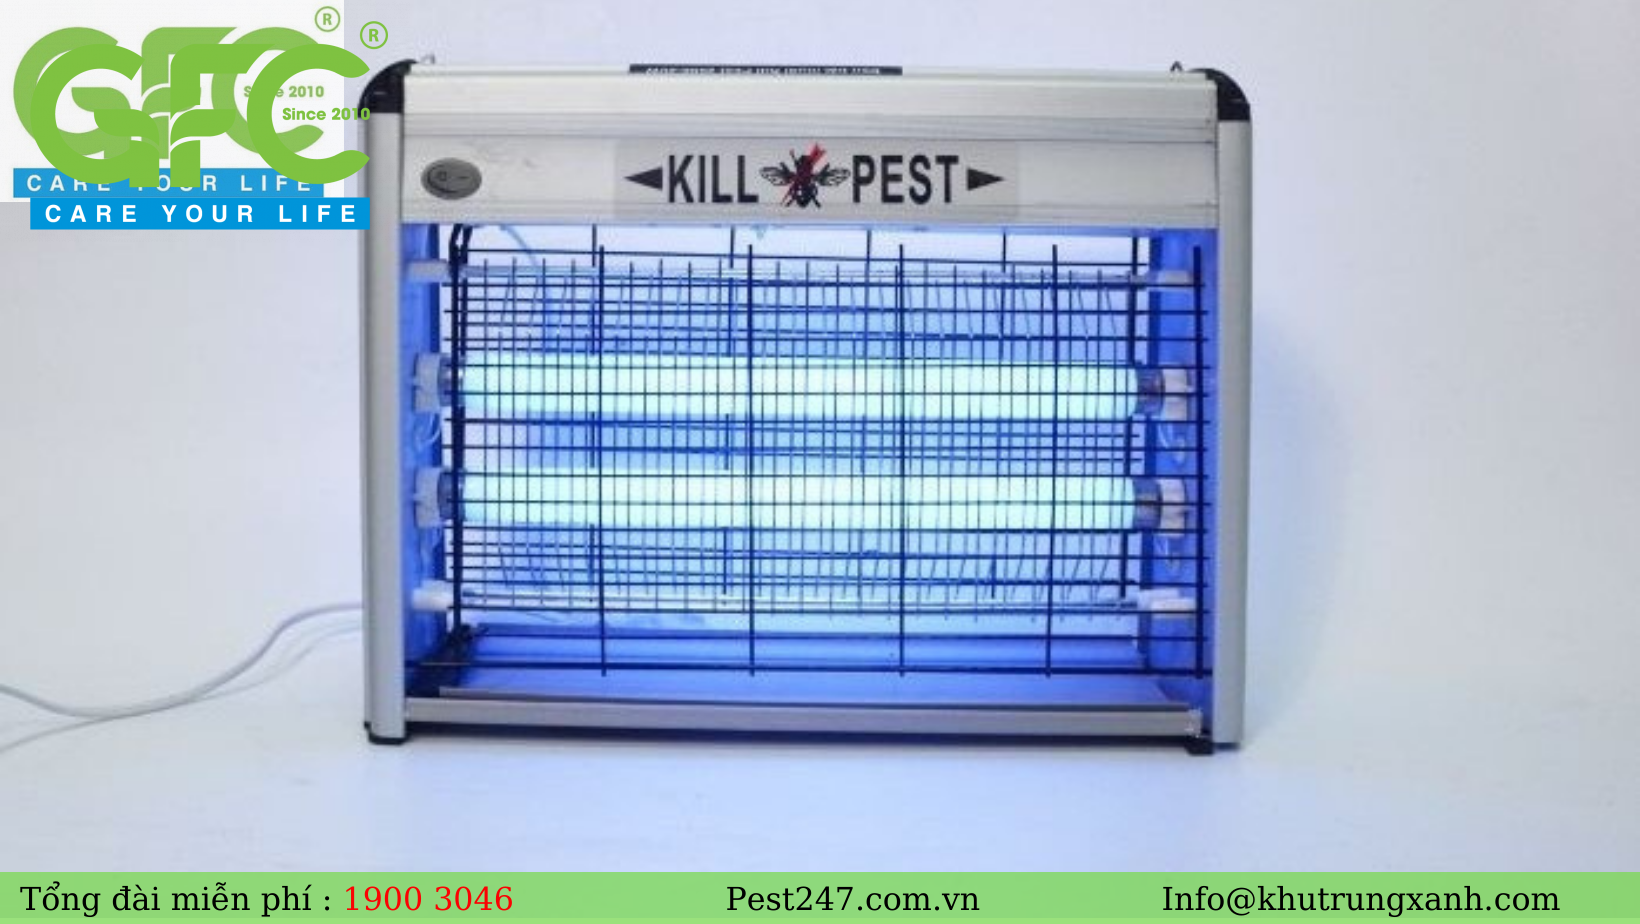 Kill Pest sử dụng công nghệ đèn đặc biệt để thu hút muỗi và tiêu diệt chúng bằng các lưới điện bên trong đèn